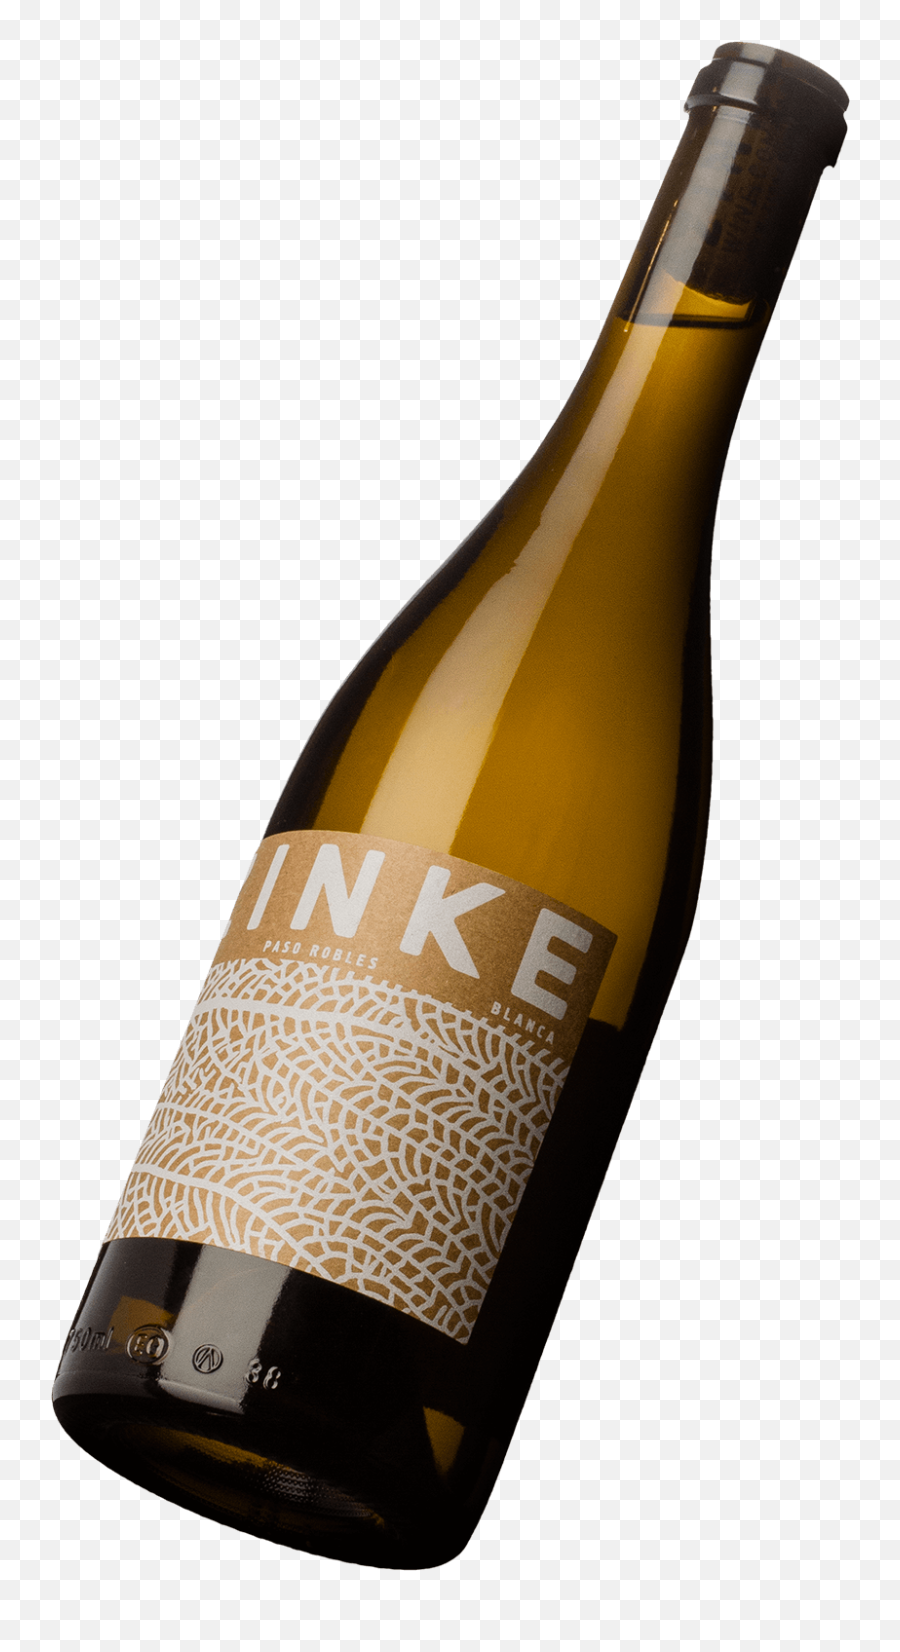 Home Zinke Wines - Zinke Wine Png,Wine Transparent